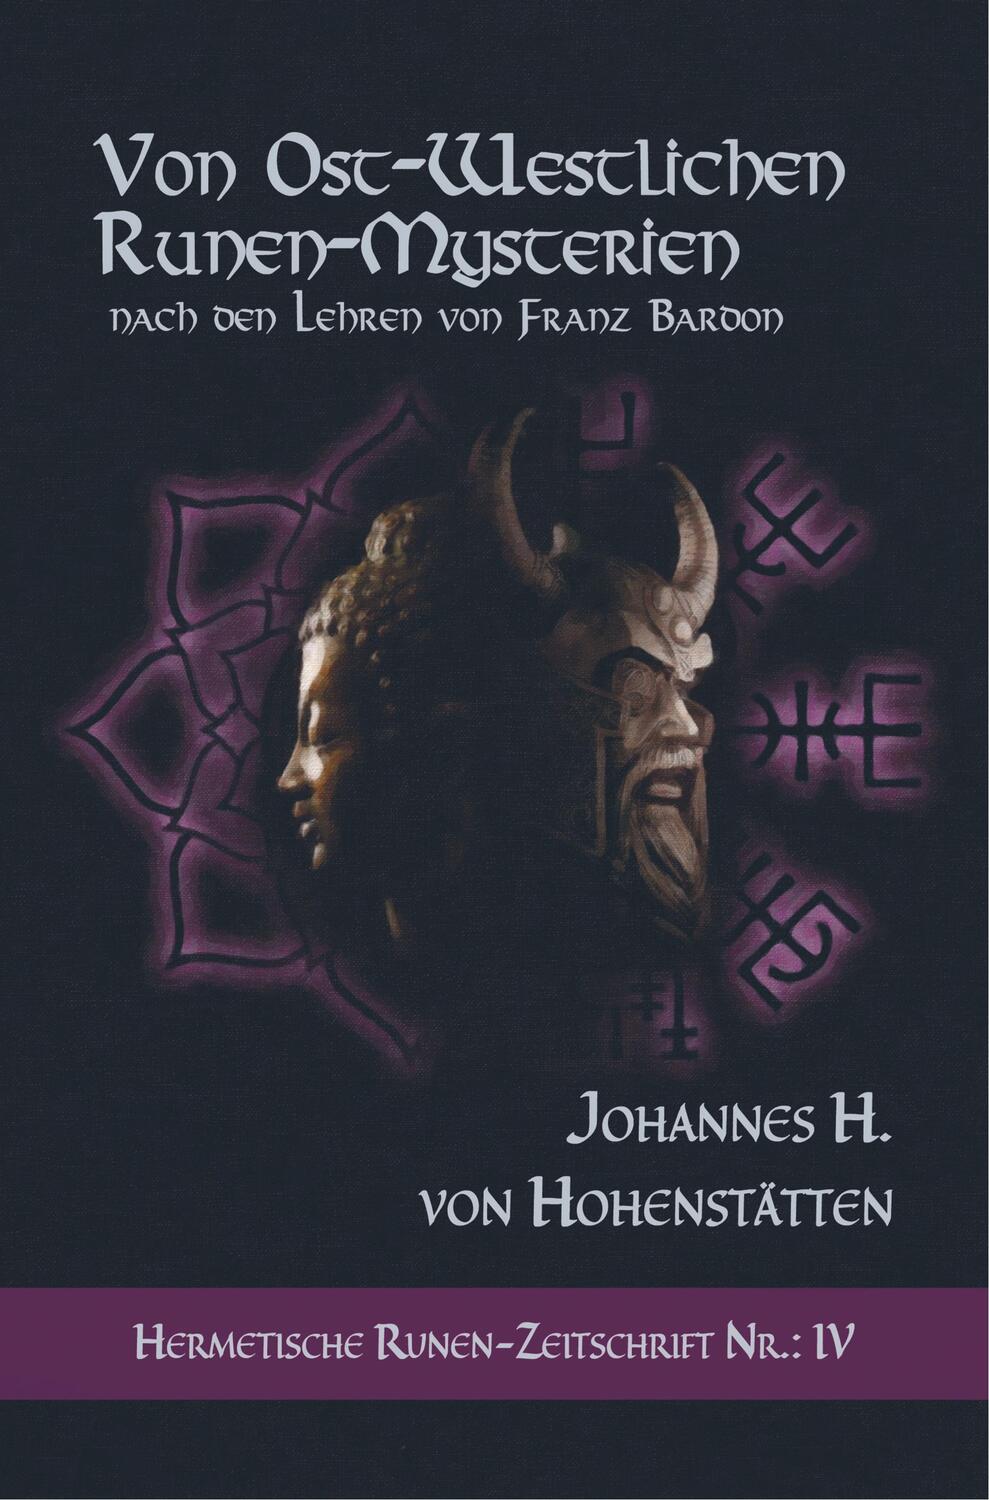 Cover: 9789463984652 | Von ost-westlichen Runen-Mysterien | Johannes H. von Hohenstätten